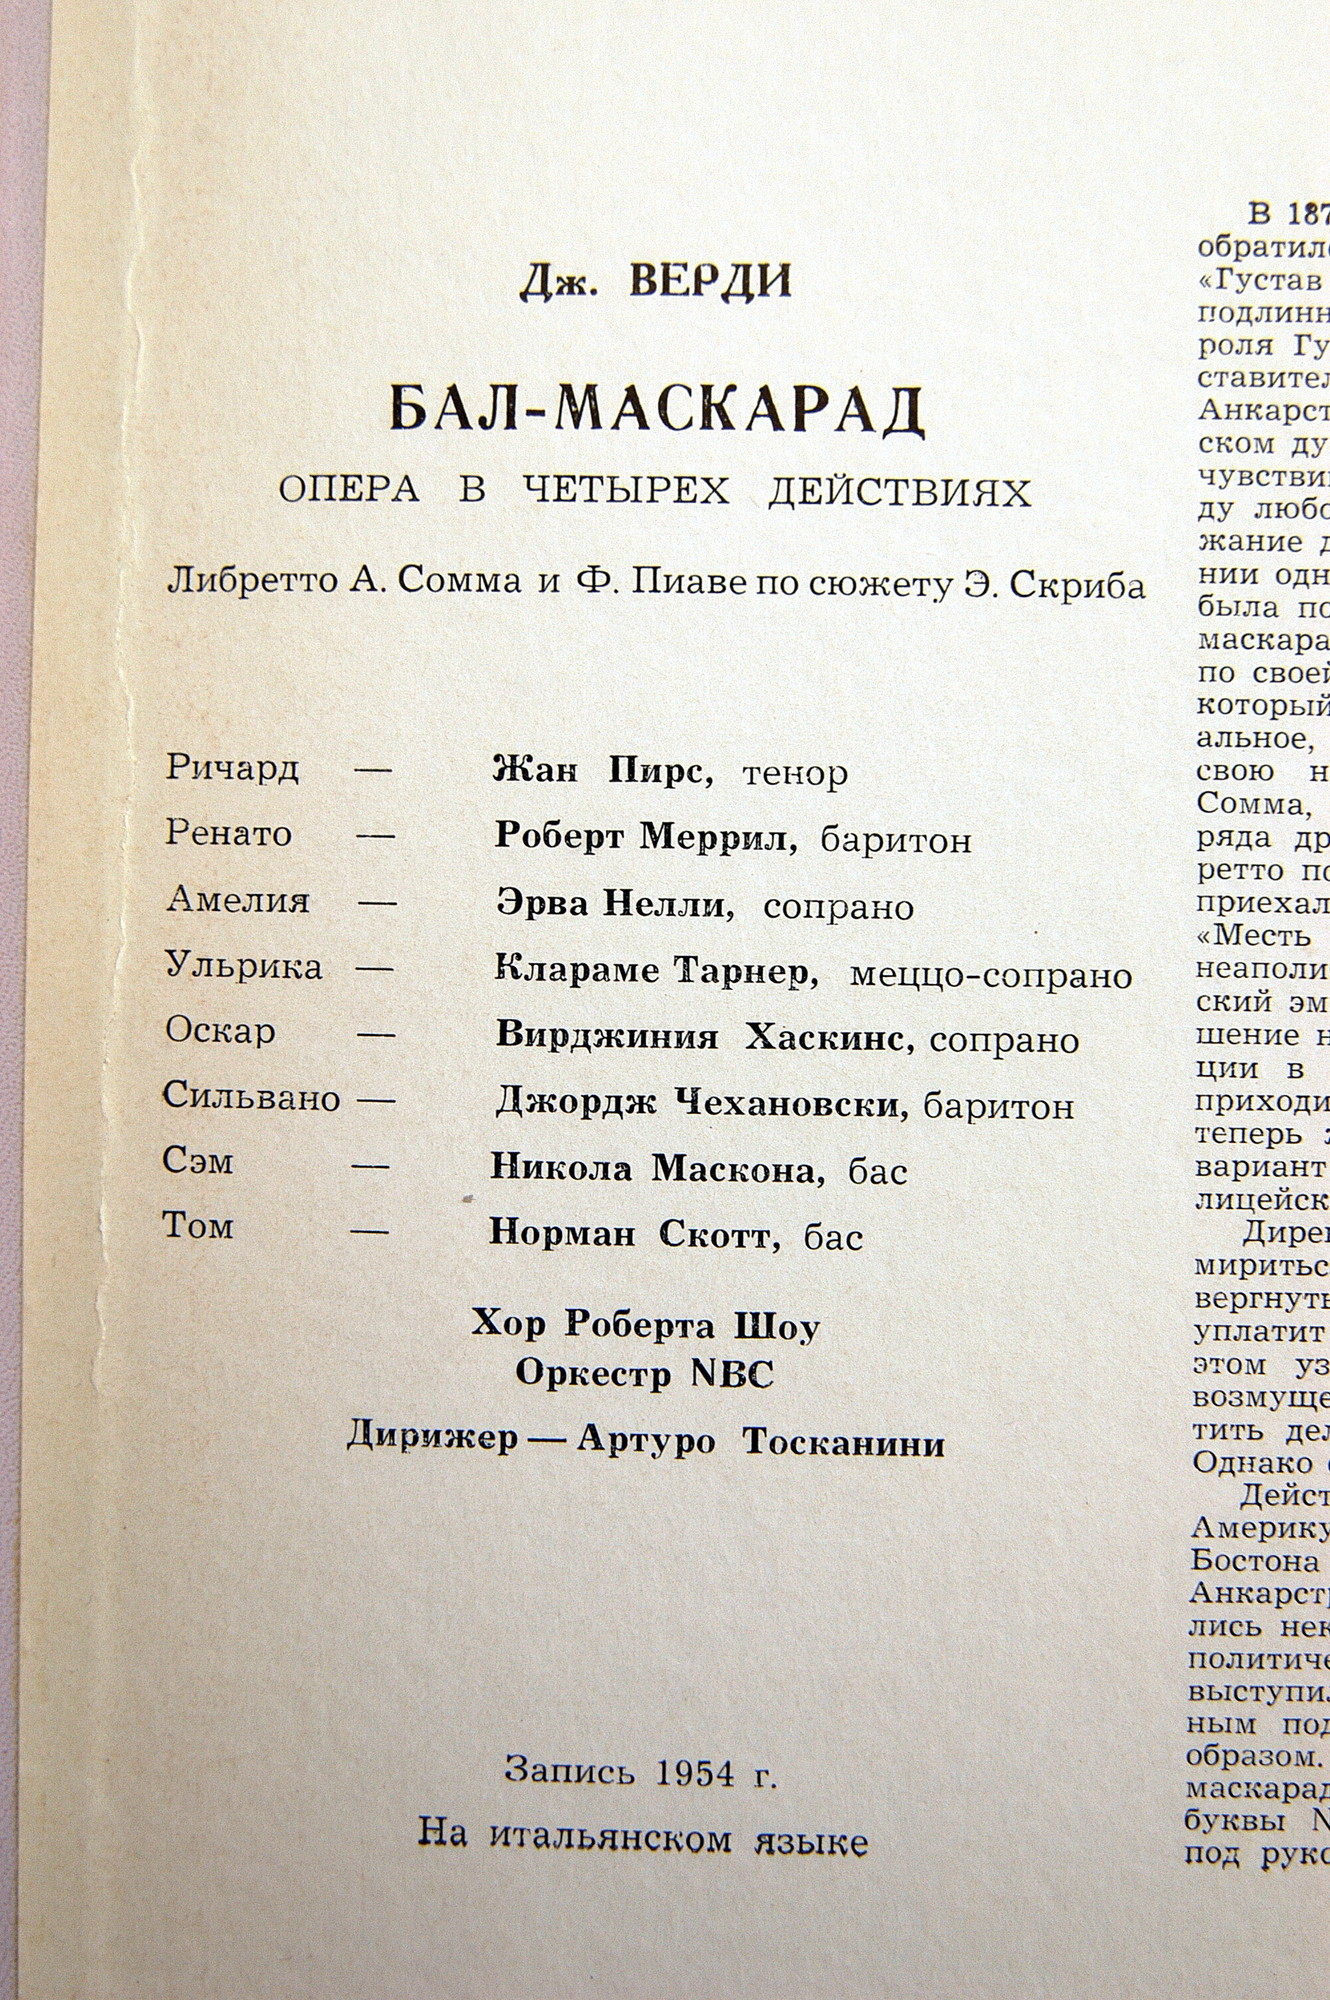 Дж.ВЕРДИ (1813-1901) "Бал-маскарад": опера в 4 д. (на итальянском языке)